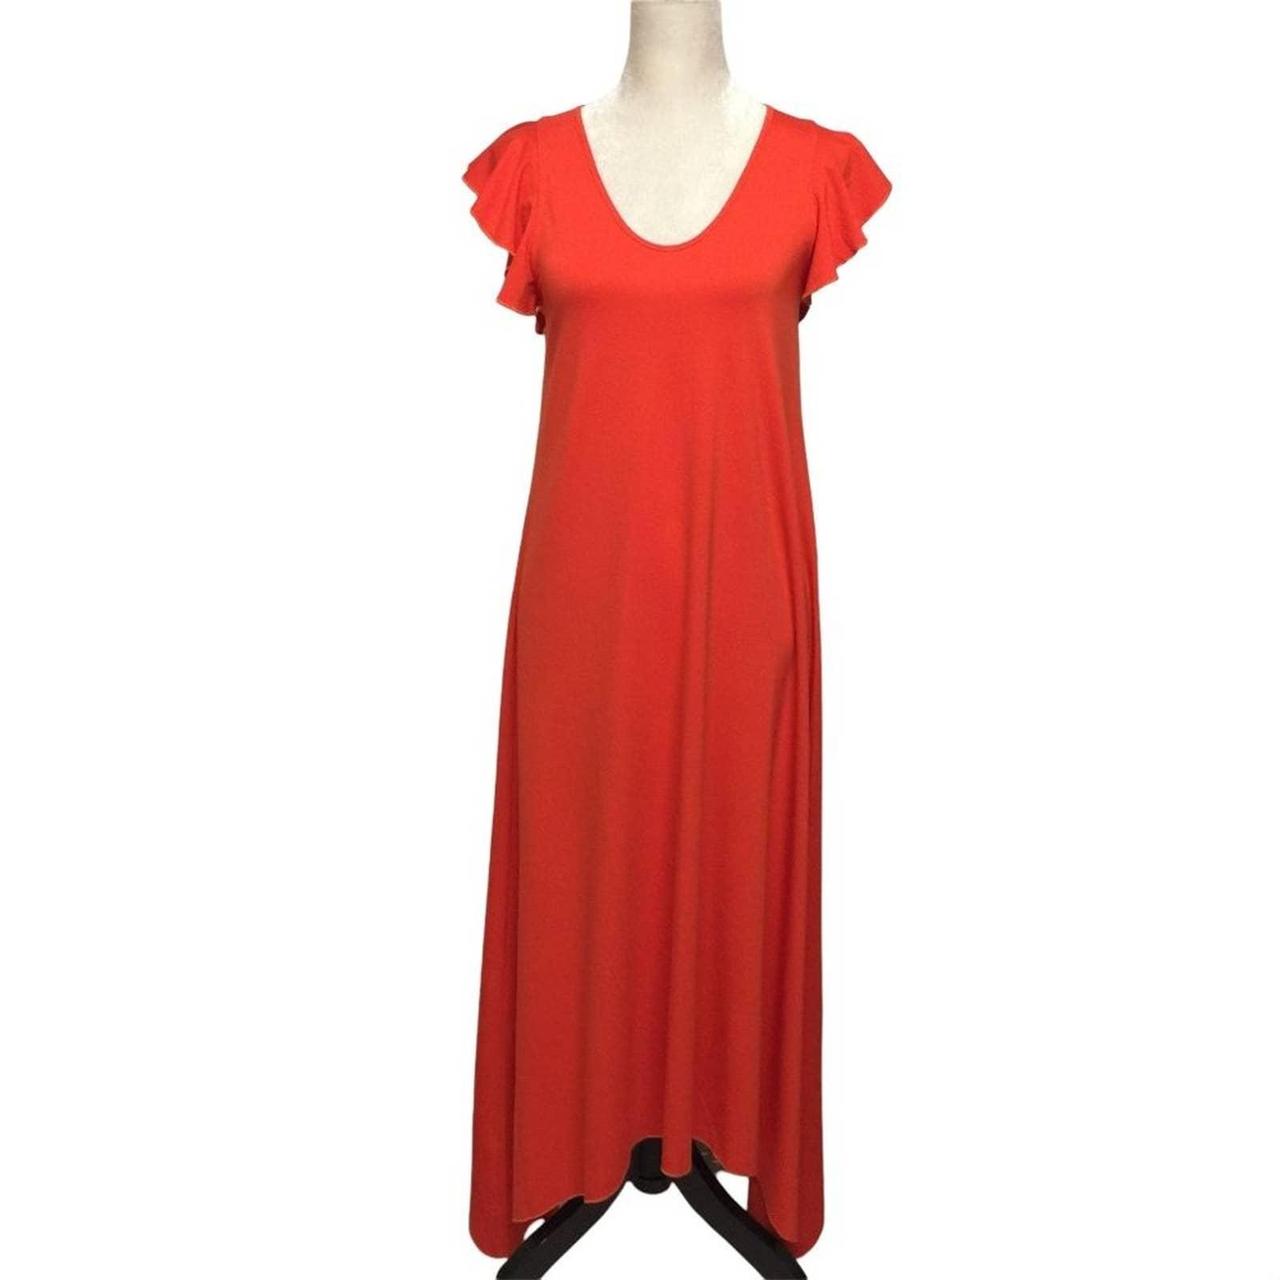 Ann Taylor Women's Orange Dress | Depop